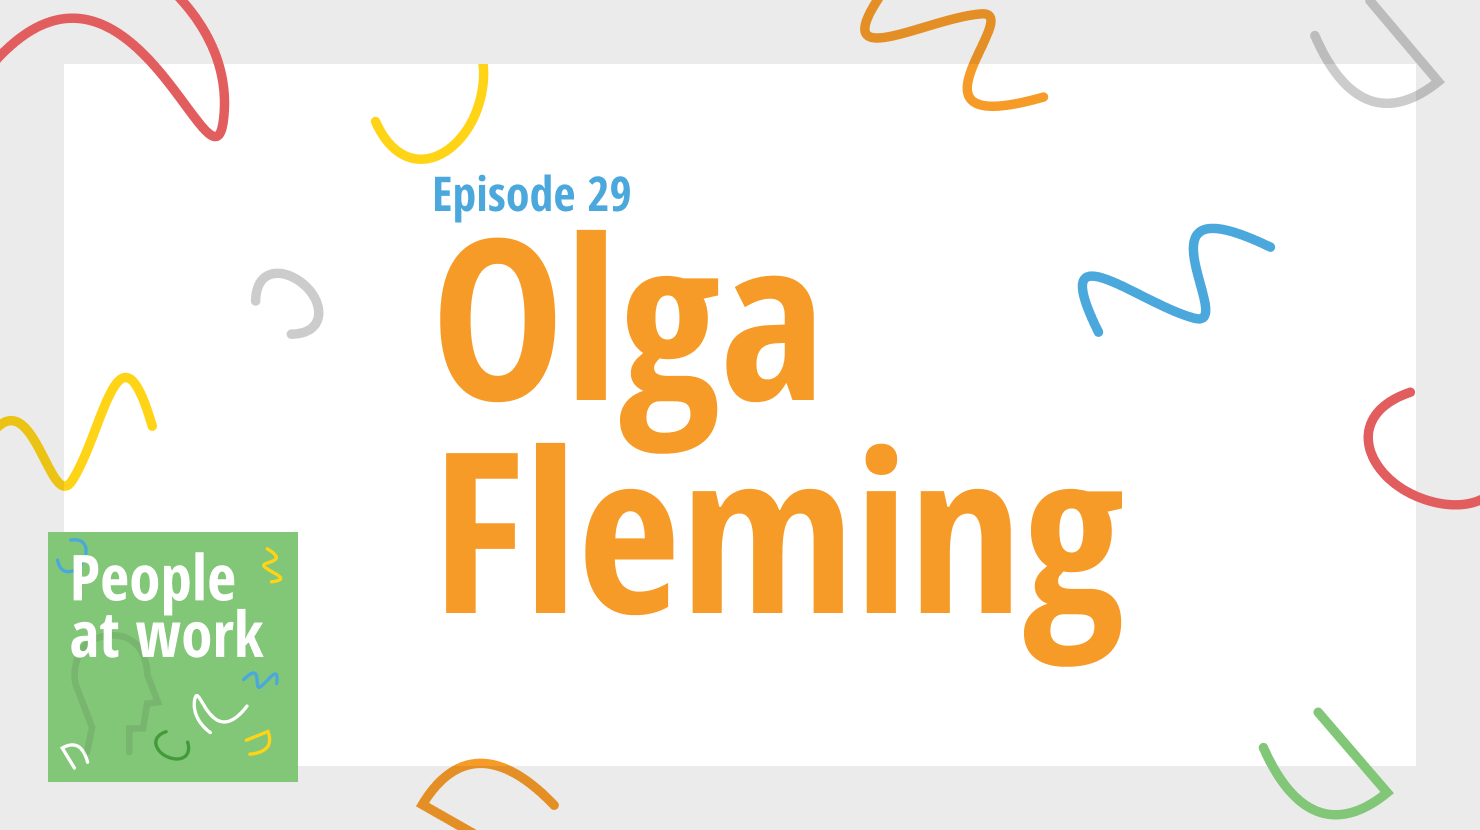 Olga Fleming’s secret sauce for employee engagement